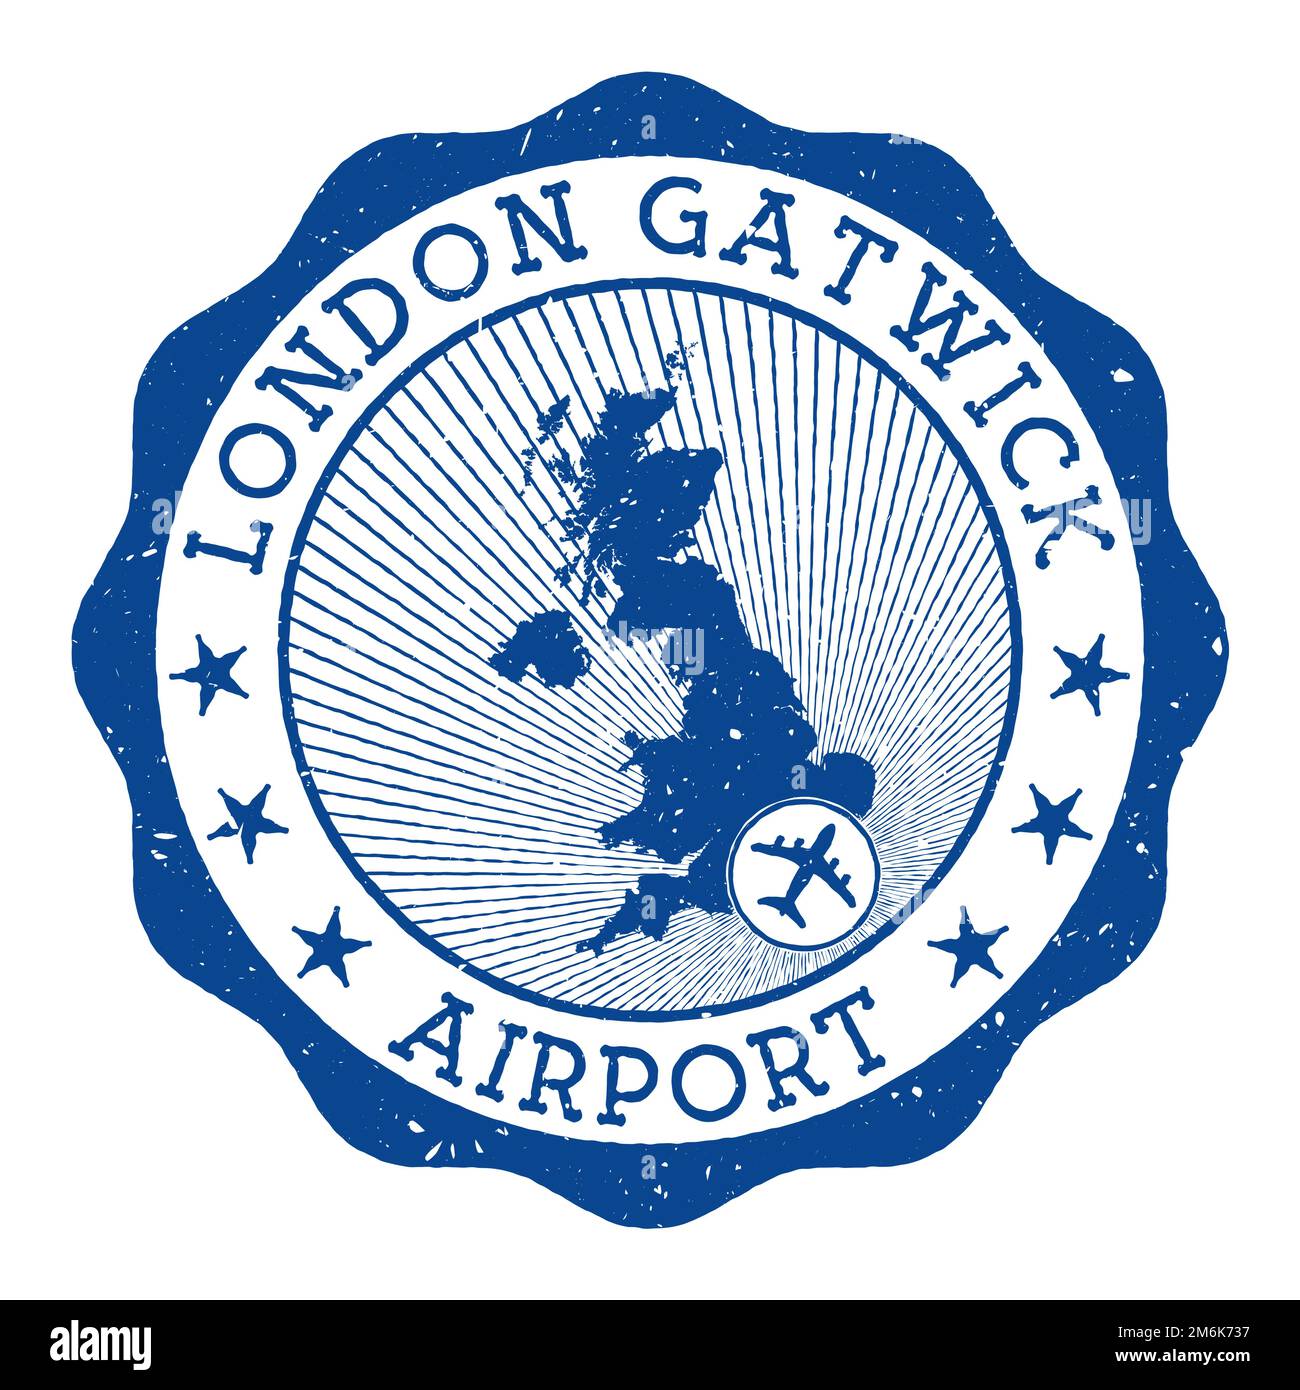 Timbre de l'aéroport de Londres Gatwick. Logo rond de l'aéroport de Londres avec emplacement sur la carte du Royaume-Uni marquée par avion. Illustration vectorielle. Illustration de Vecteur